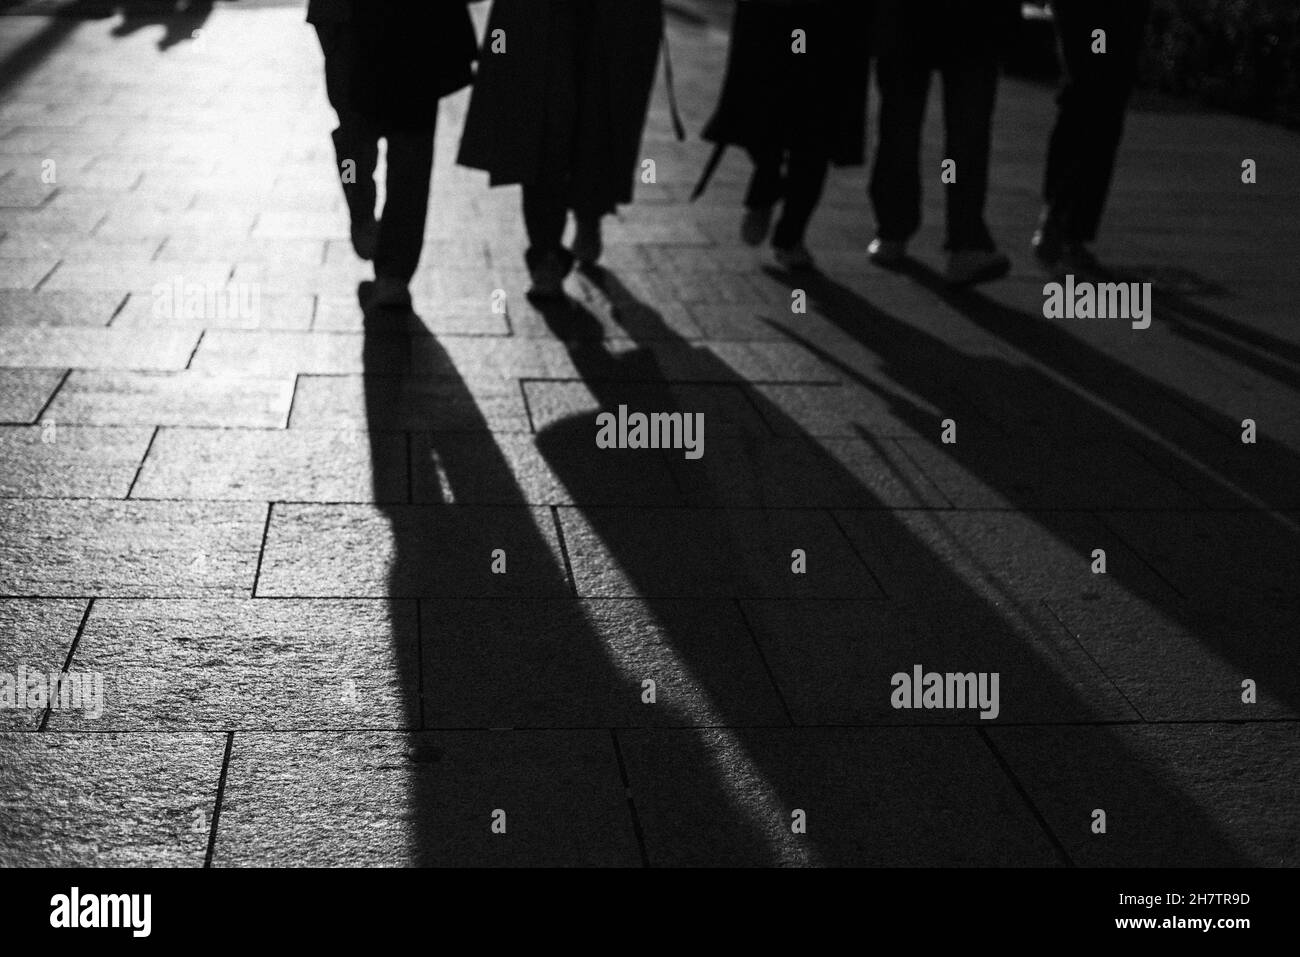 Prise de vue en niveaux de gris des ombres des personnes marchant dans la rue Banque D'Images